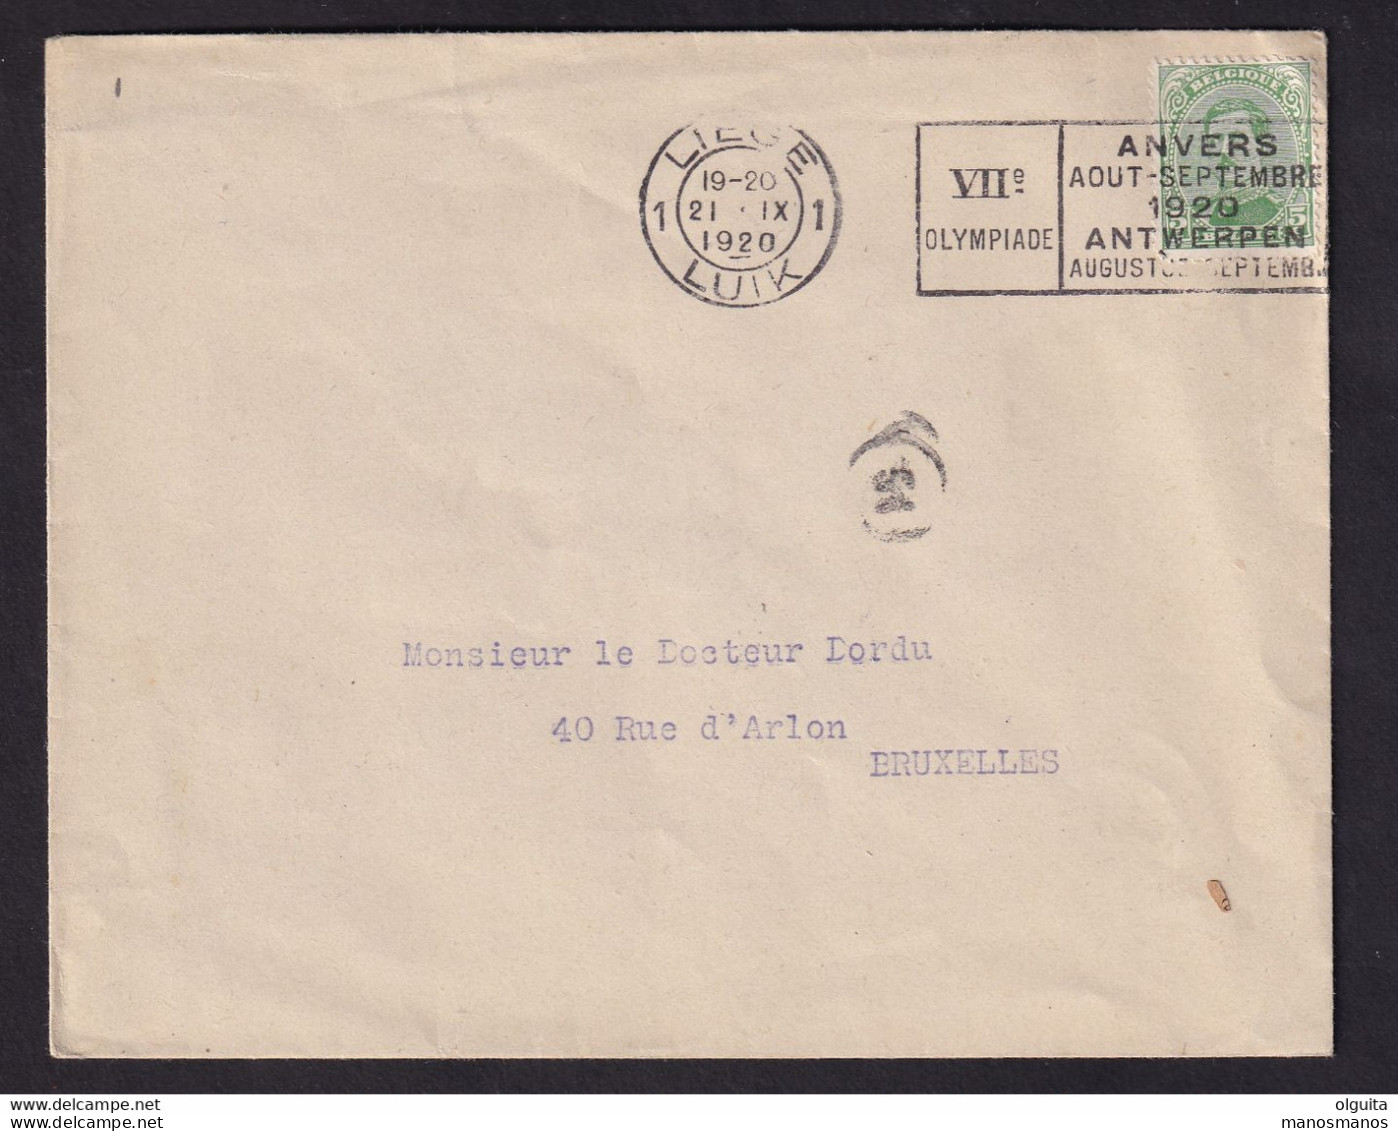 DDCC 348 -- LES IMPRIMES - Enveloppe Ouverte TP Albert 5 C - Cachet Mécanique LIEGE 1 Jeux Olympiques 1920 - Summer 1920: Antwerp